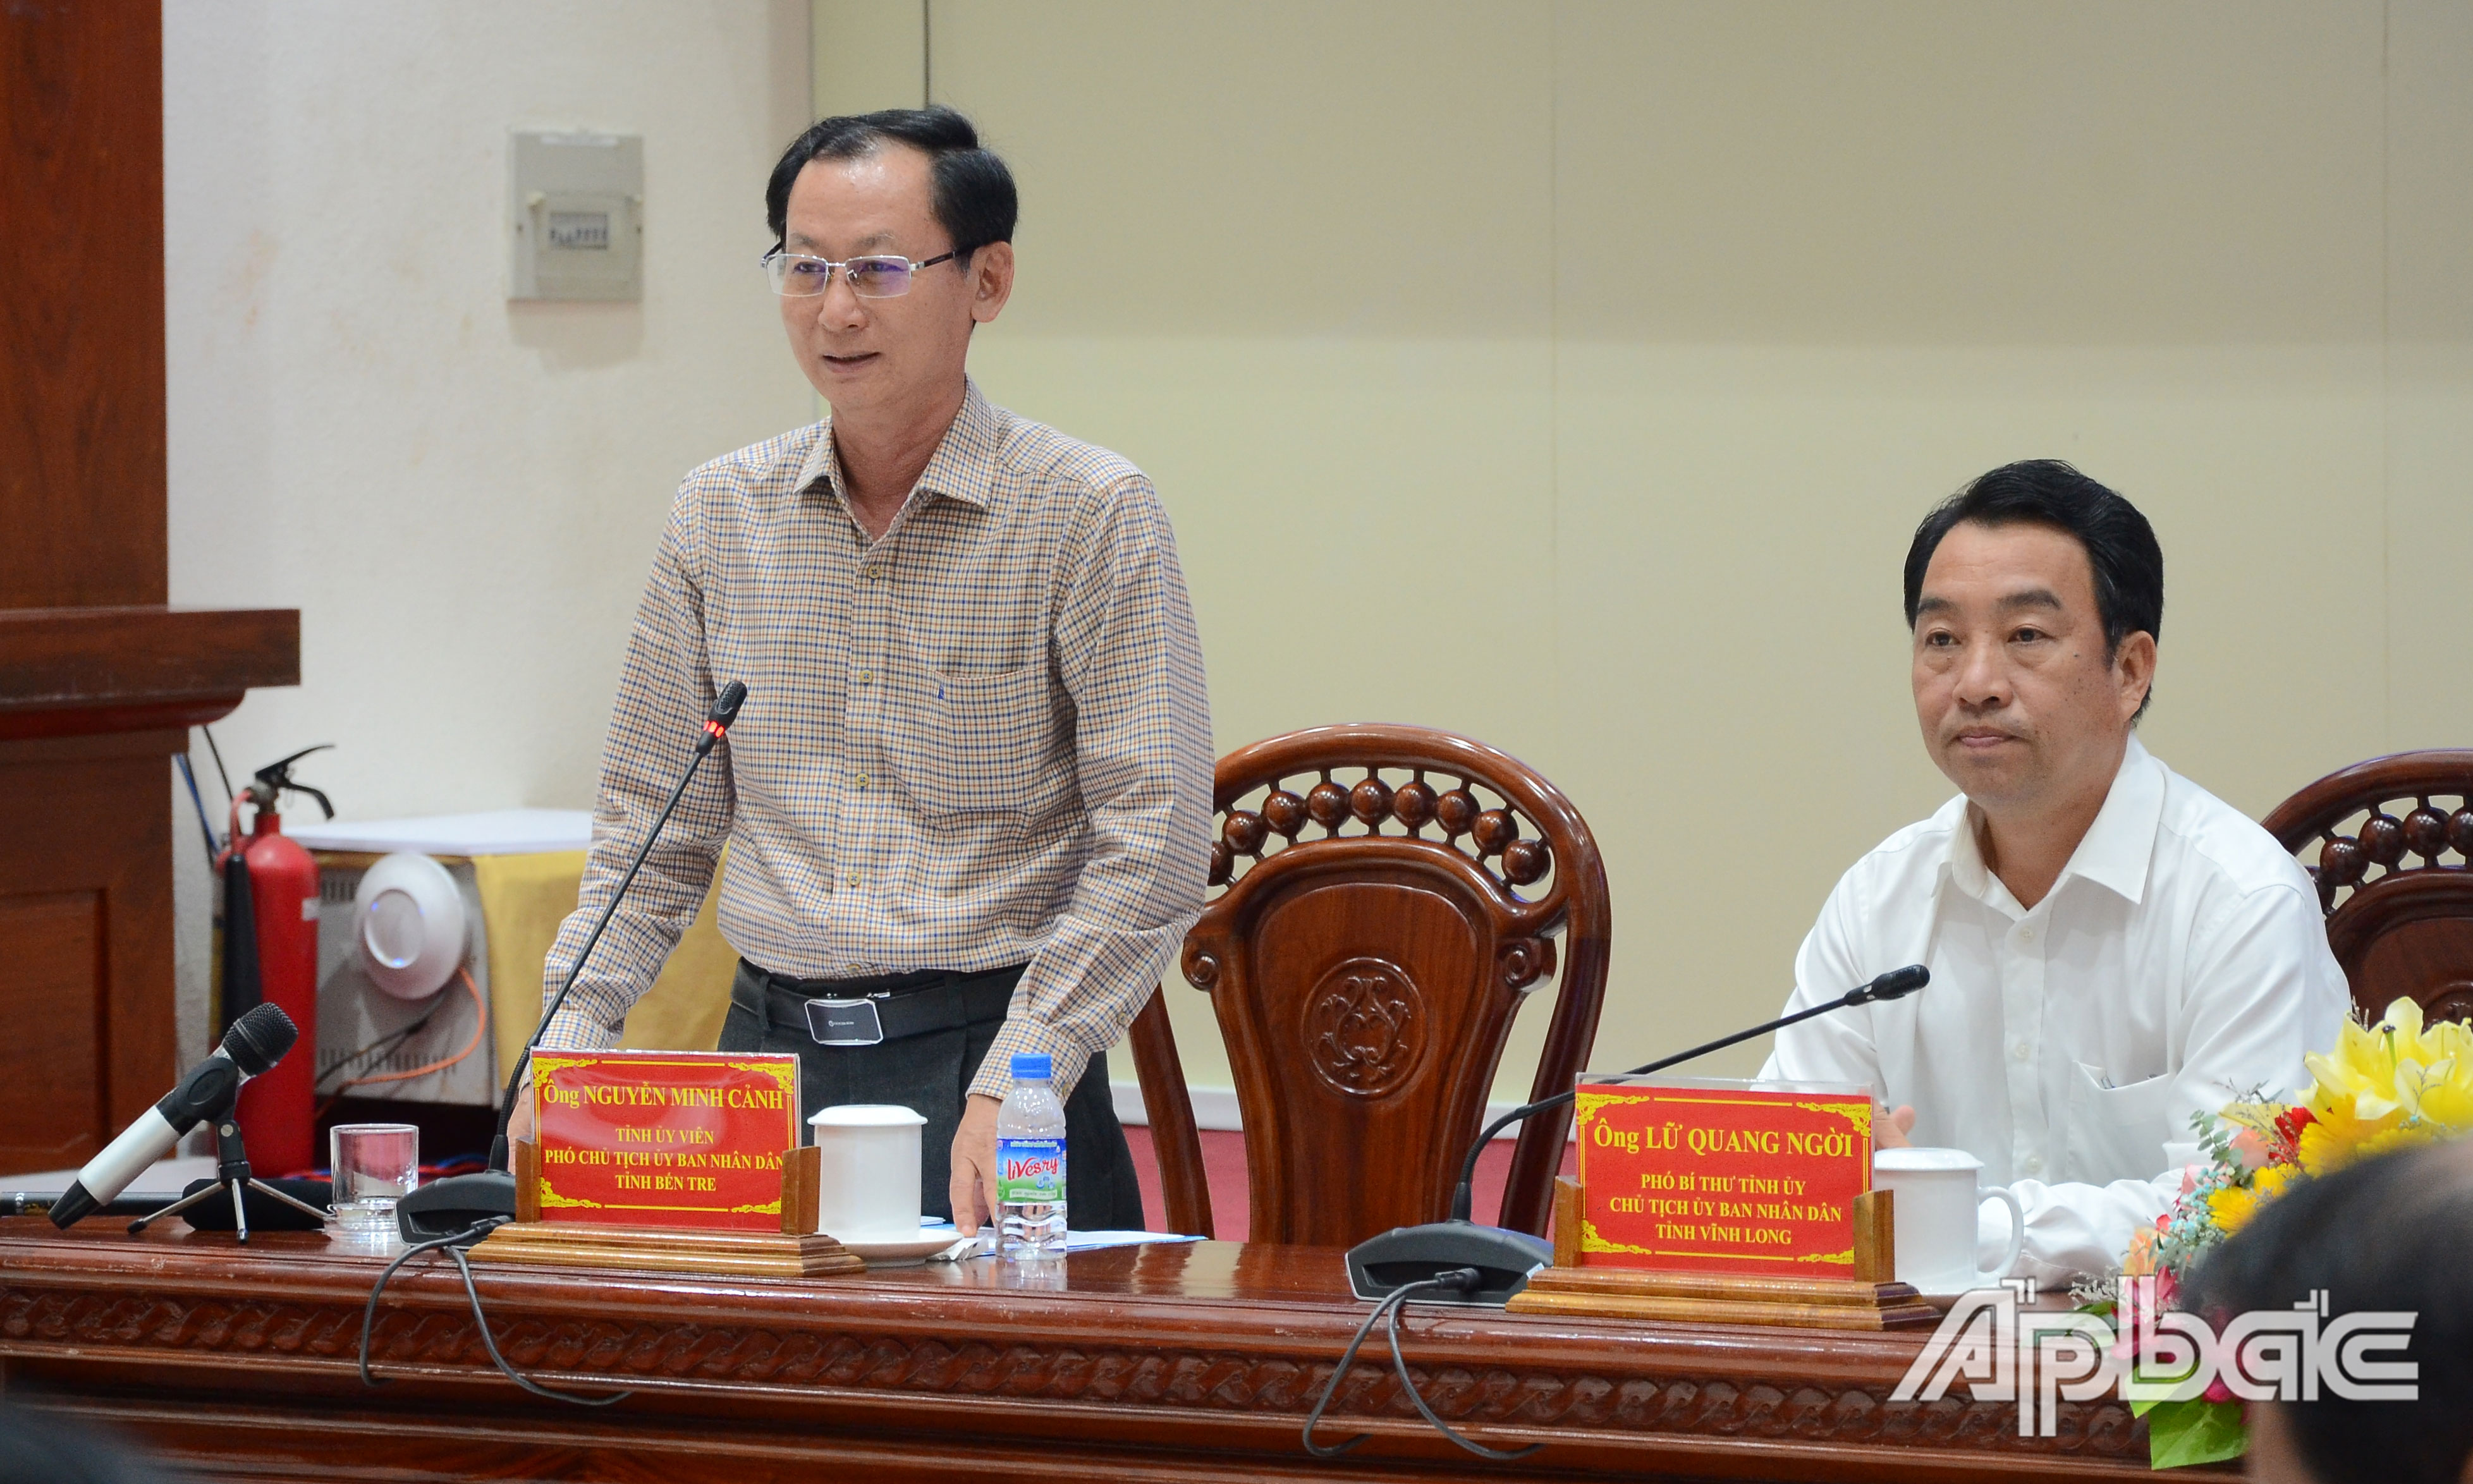 Phó Chủ tịch UBND tỉnh Bến Tre Nguyễn Minh Cảnh phát biểu tại hội nghị.